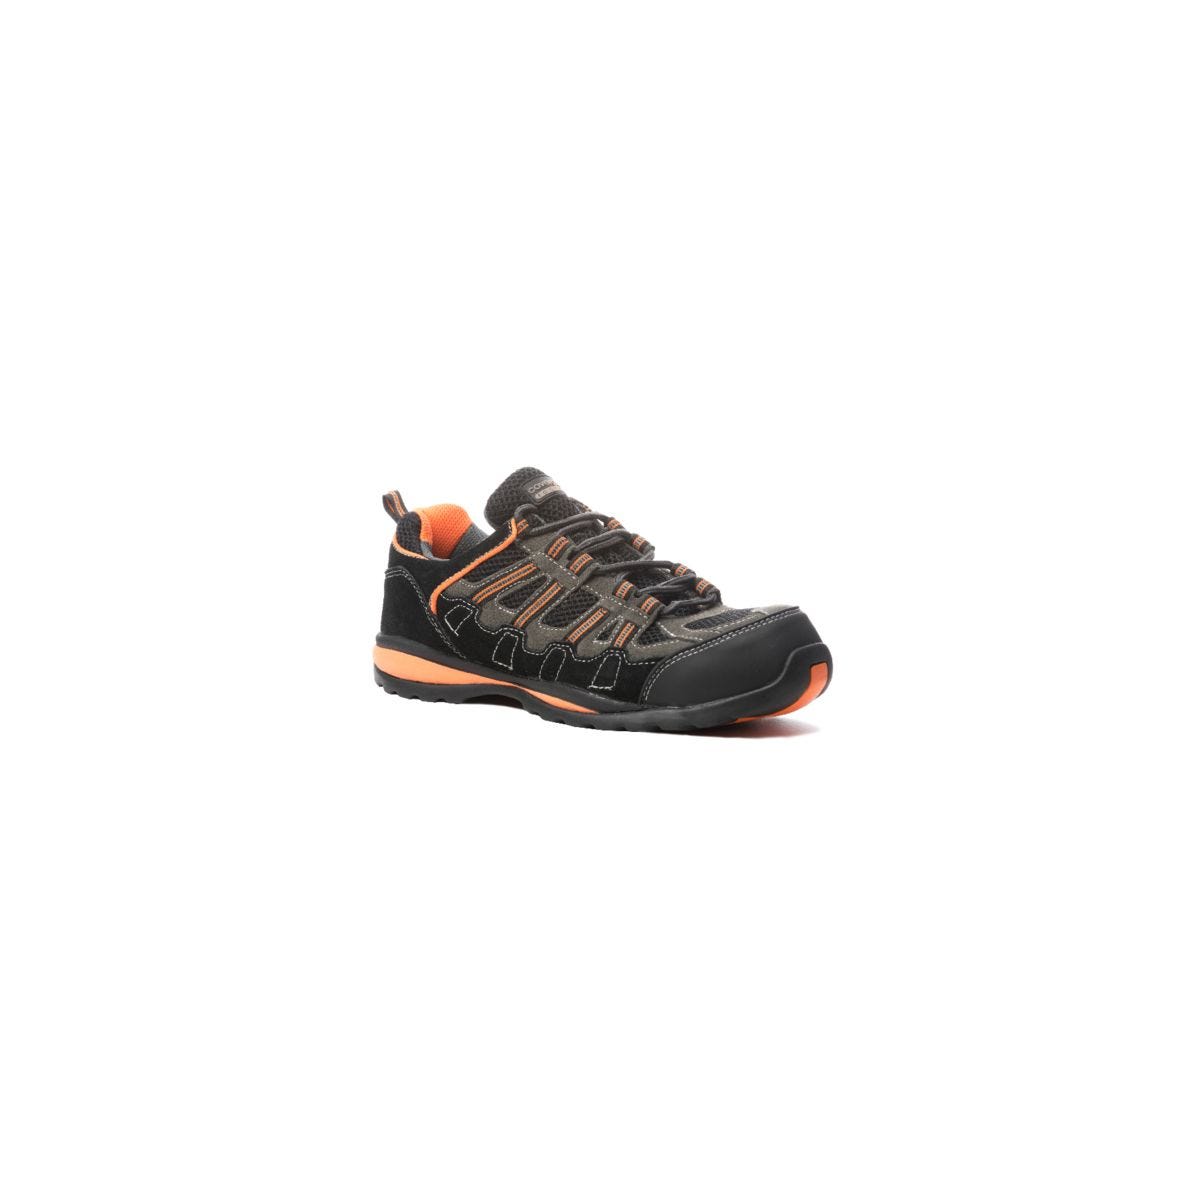 Chaussures de sécurité HELVITE S1P composite noir/orange - COVERGUARD - Taille 38 0